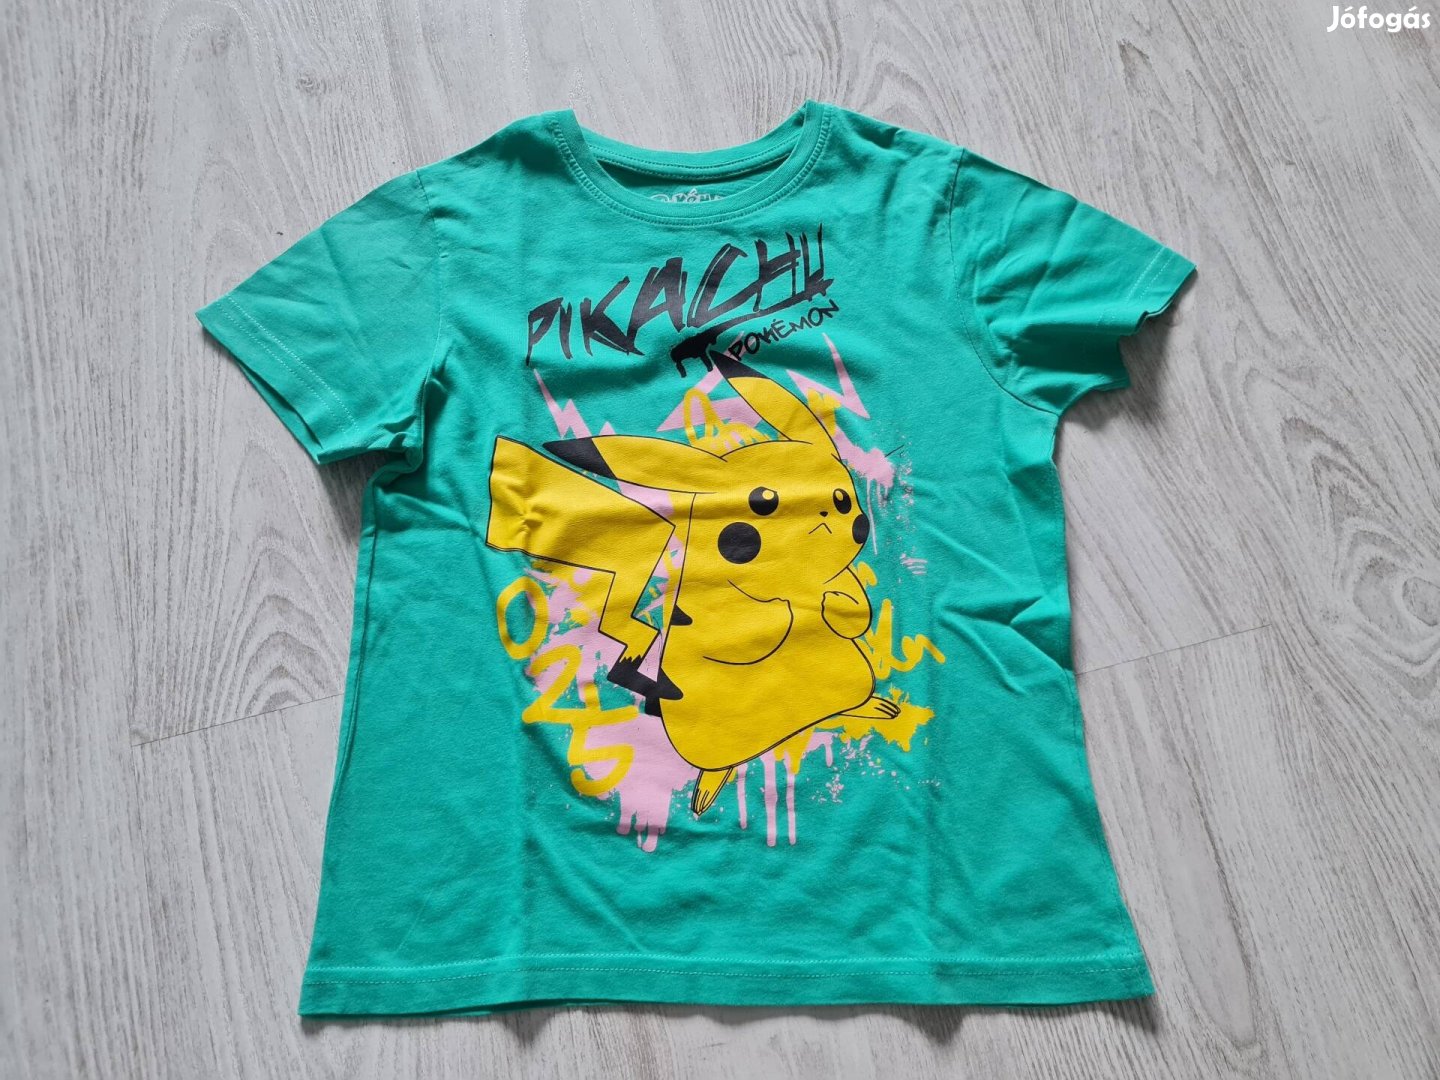 128-as Pikachu mintás póló